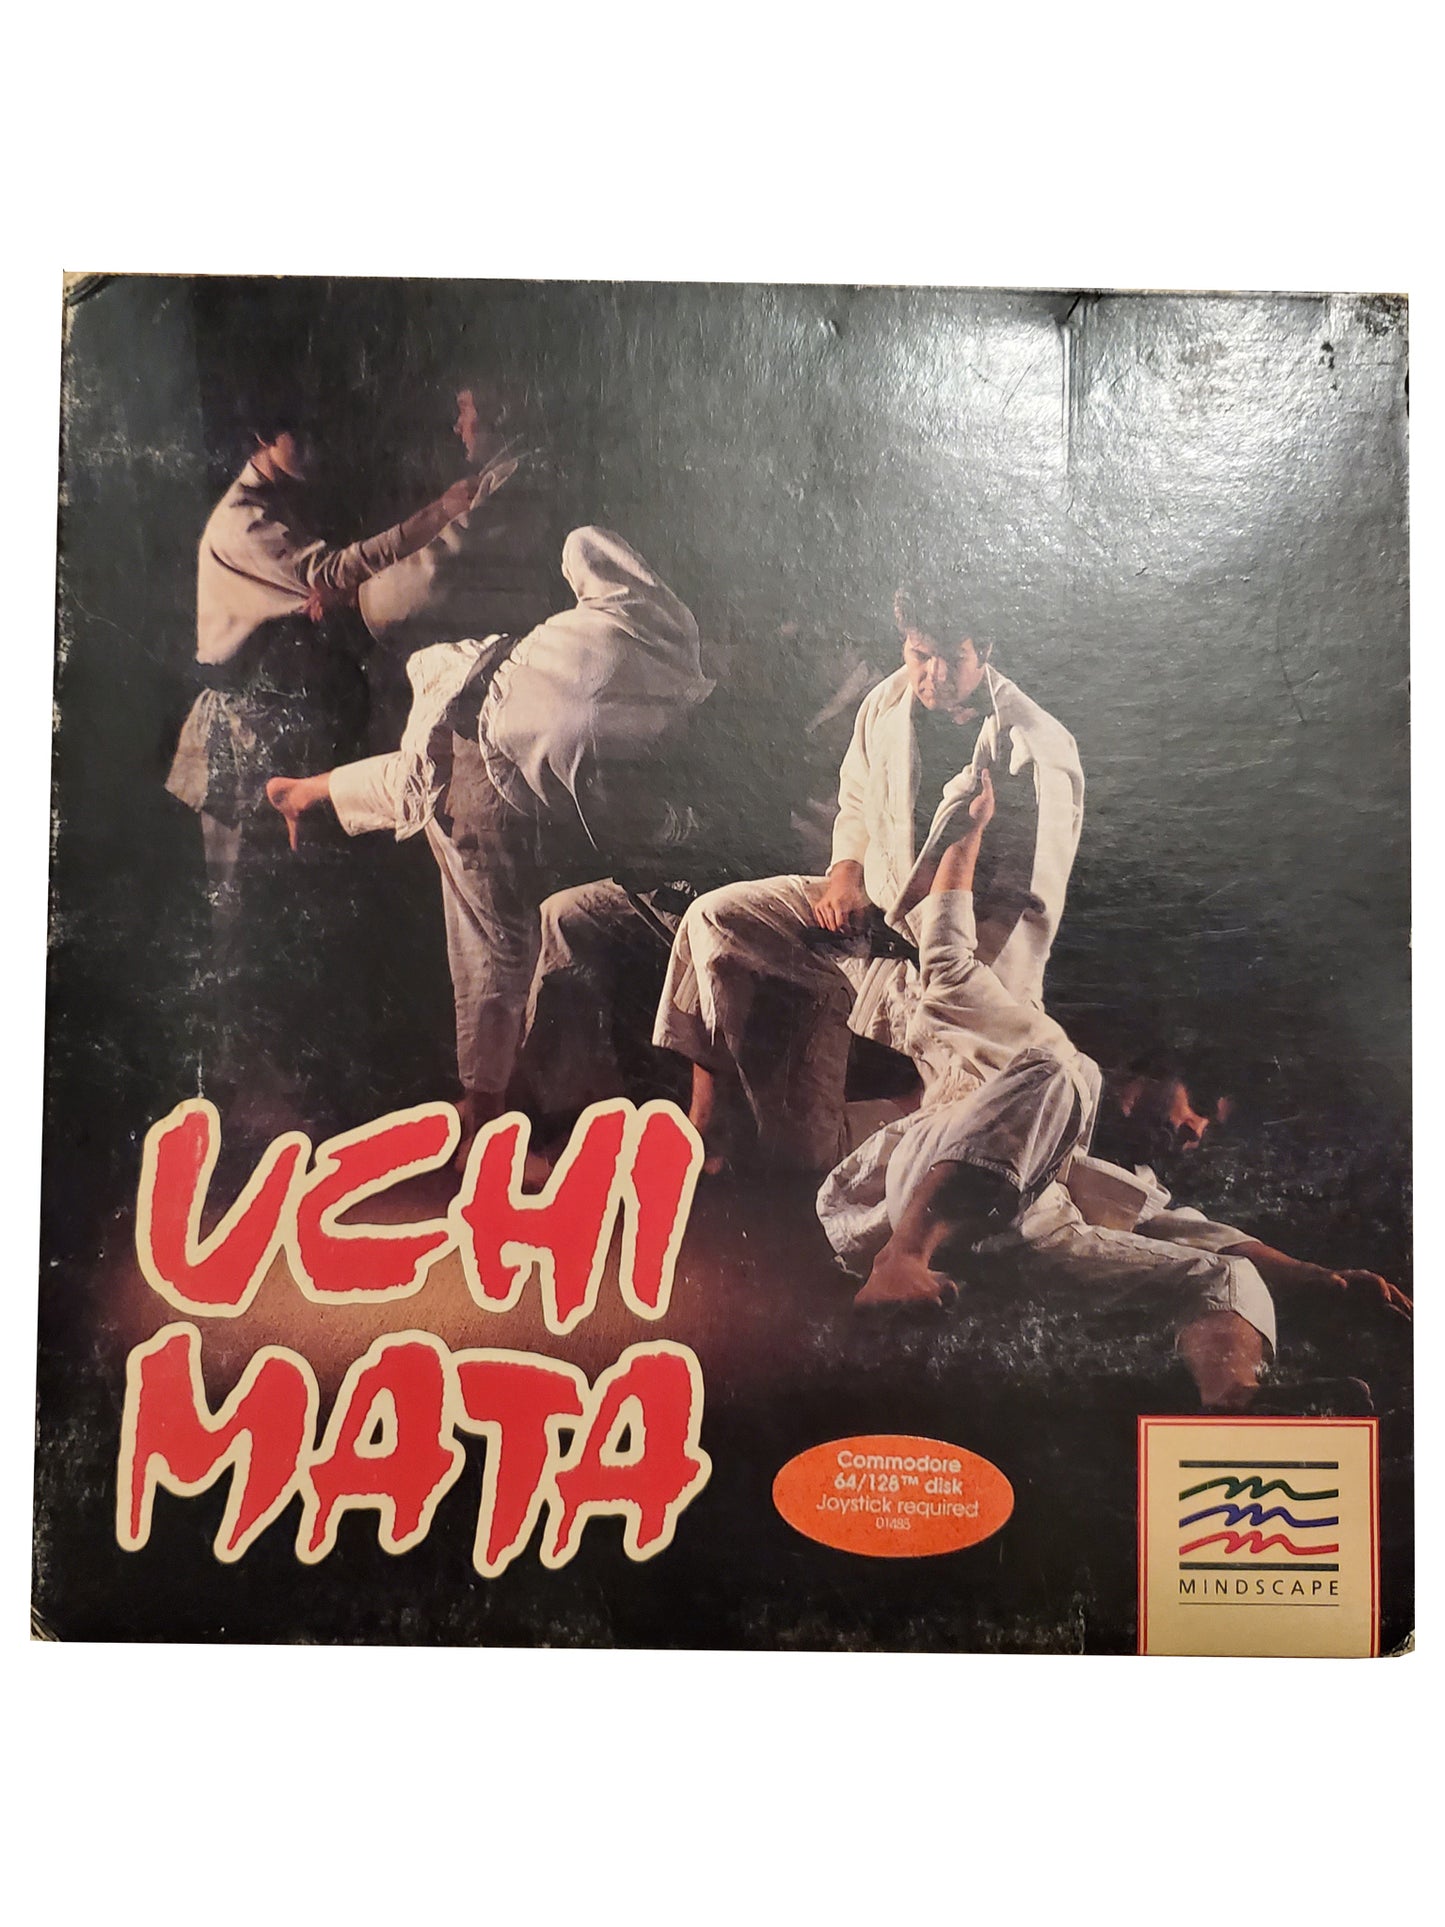 Uchi Mata